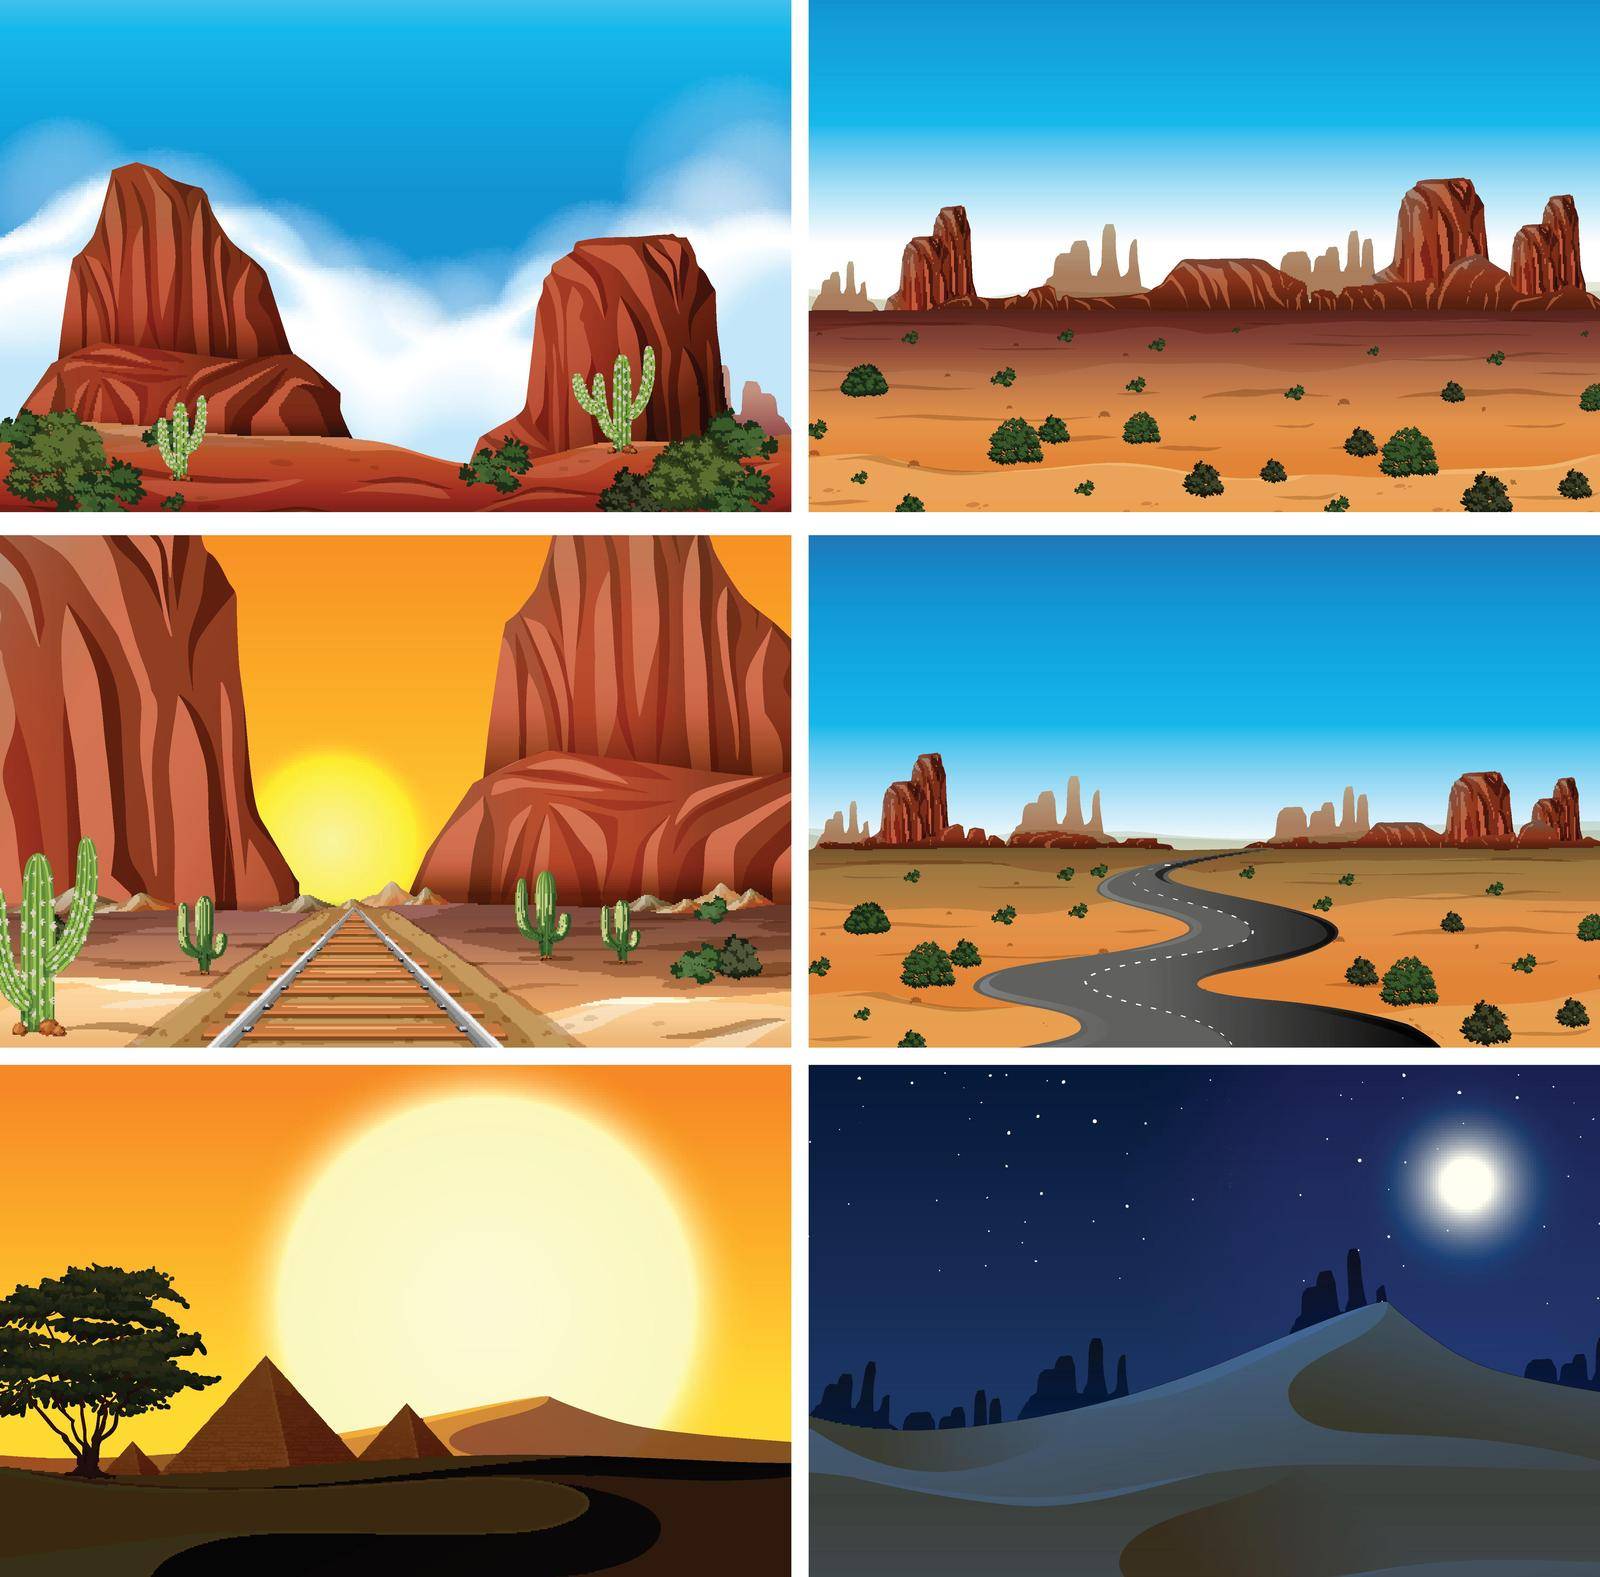 Set of diferent desert scenes by iimages